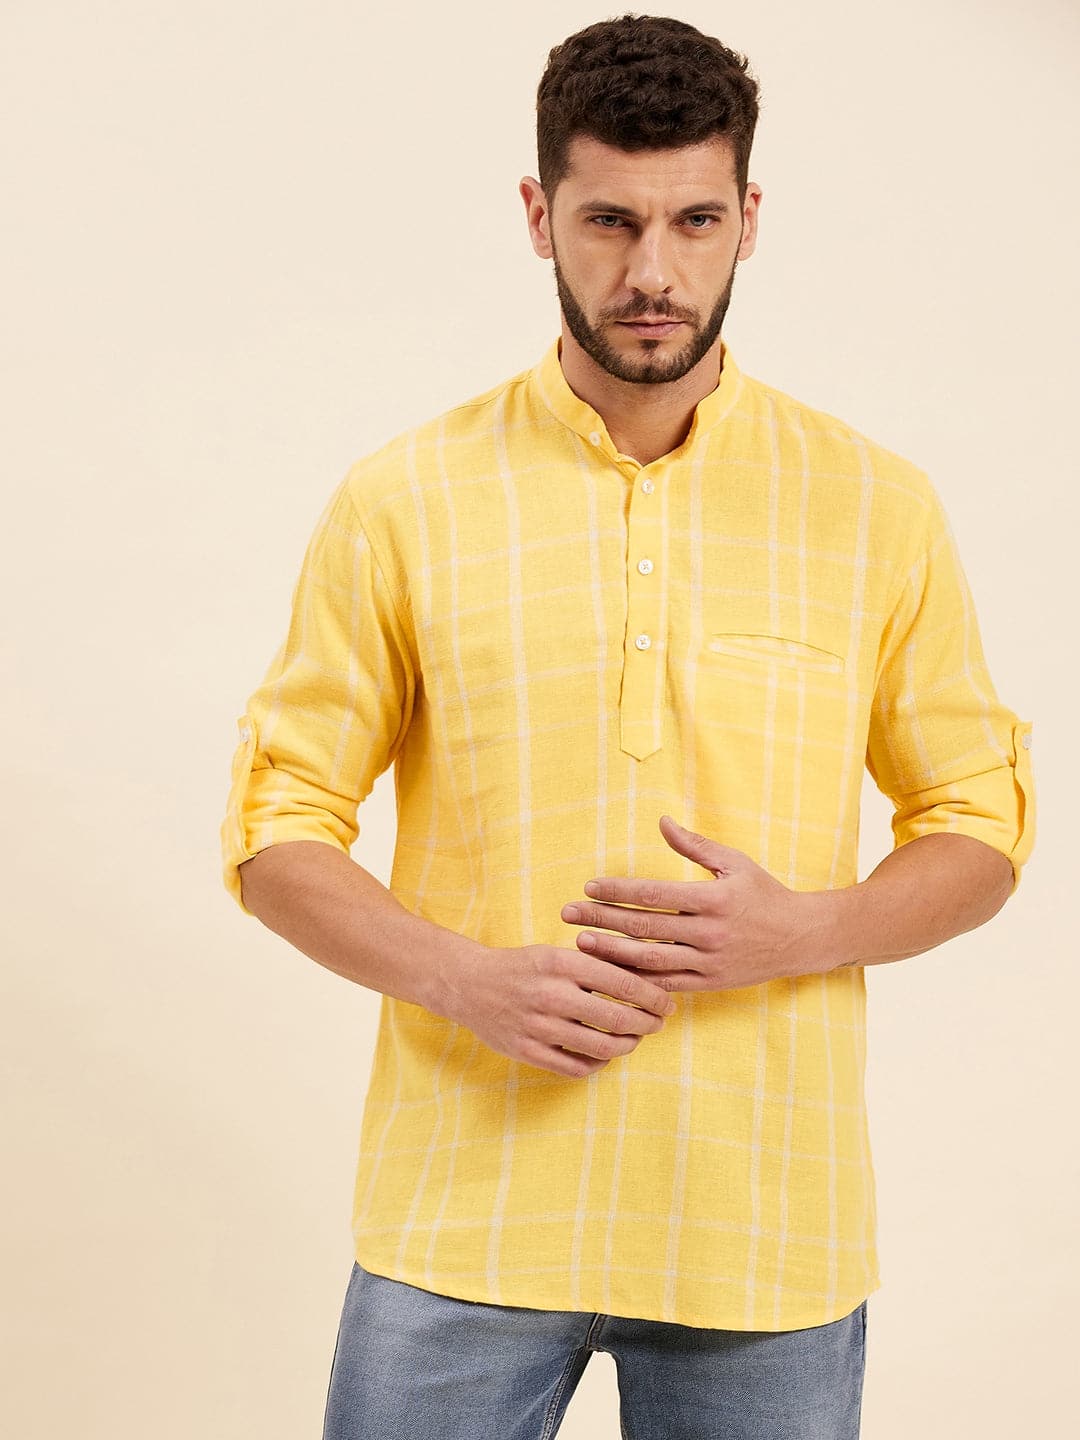 Men's Yellow & White Check Roll-Up Sleeves Kurta Shirt - LYUSH-MASCLN